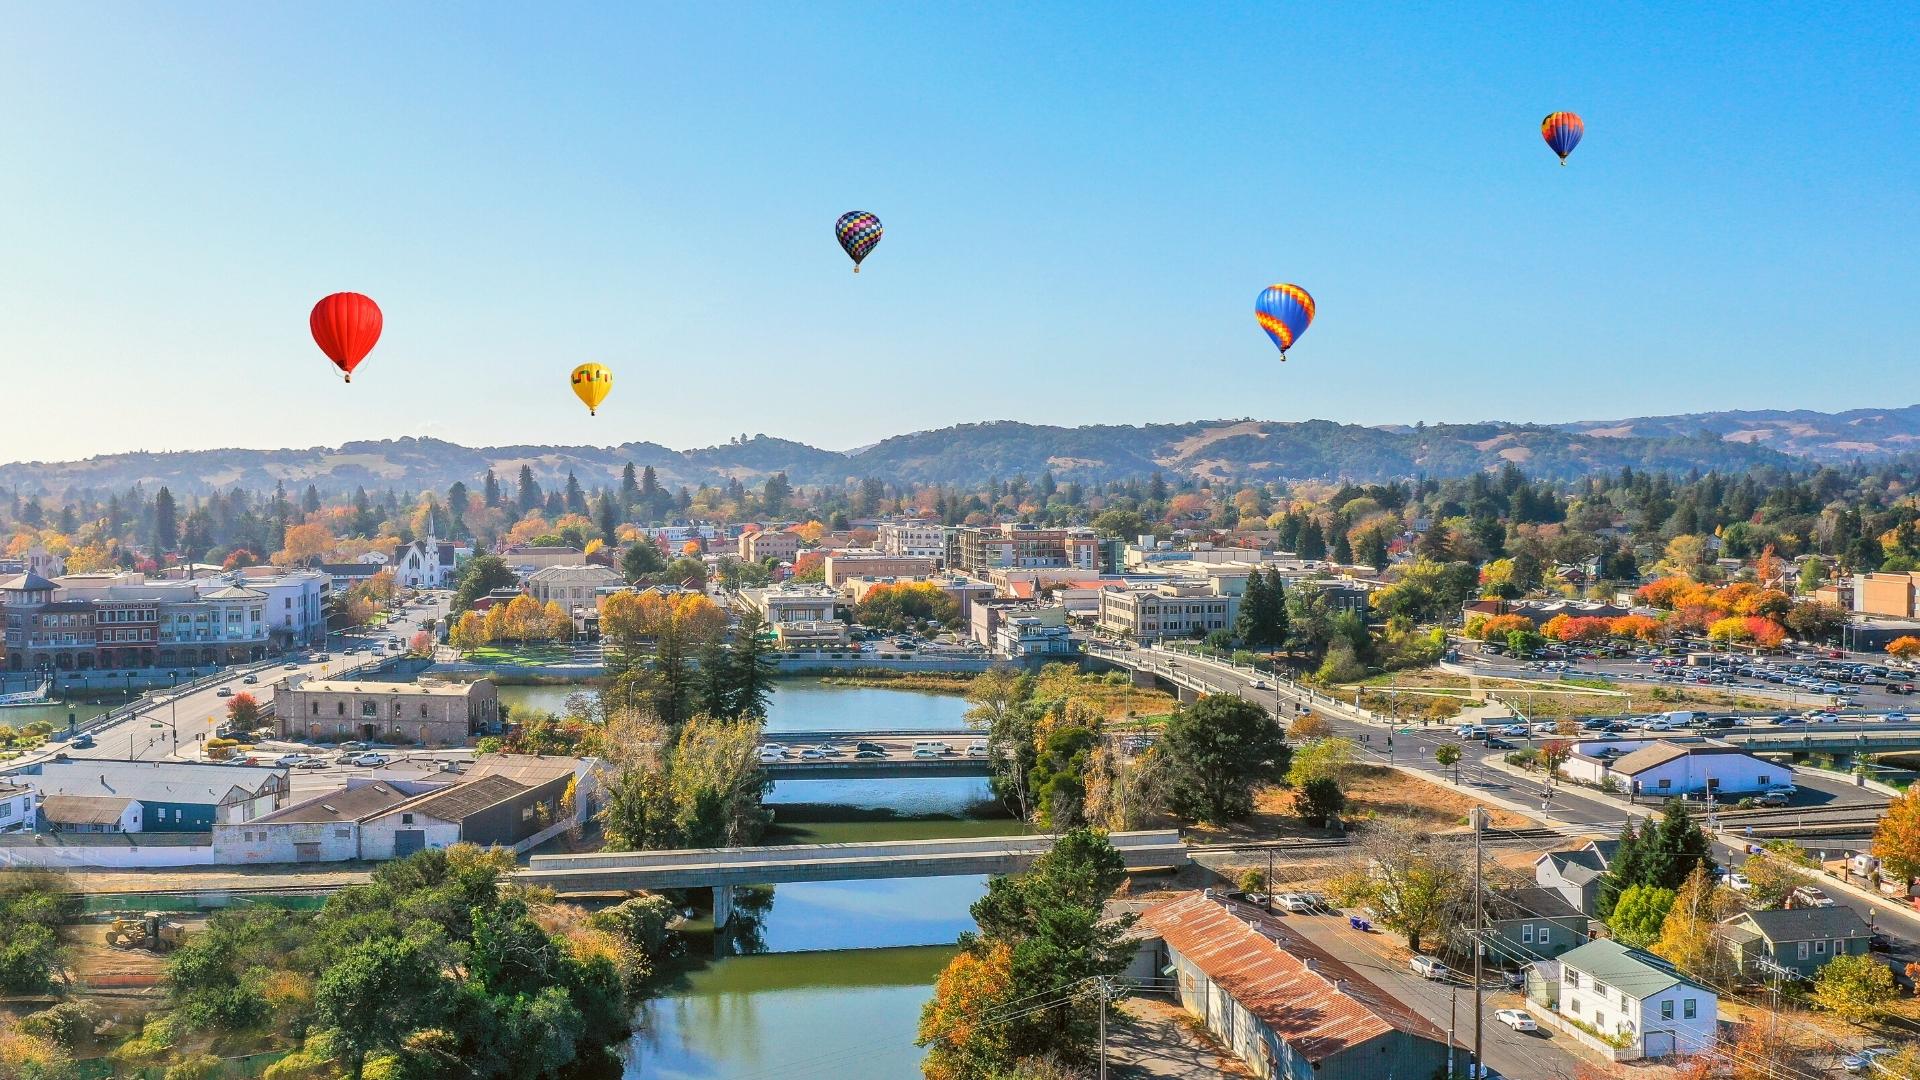 Napa California Aerial Riverfront with Hot Air Balloons